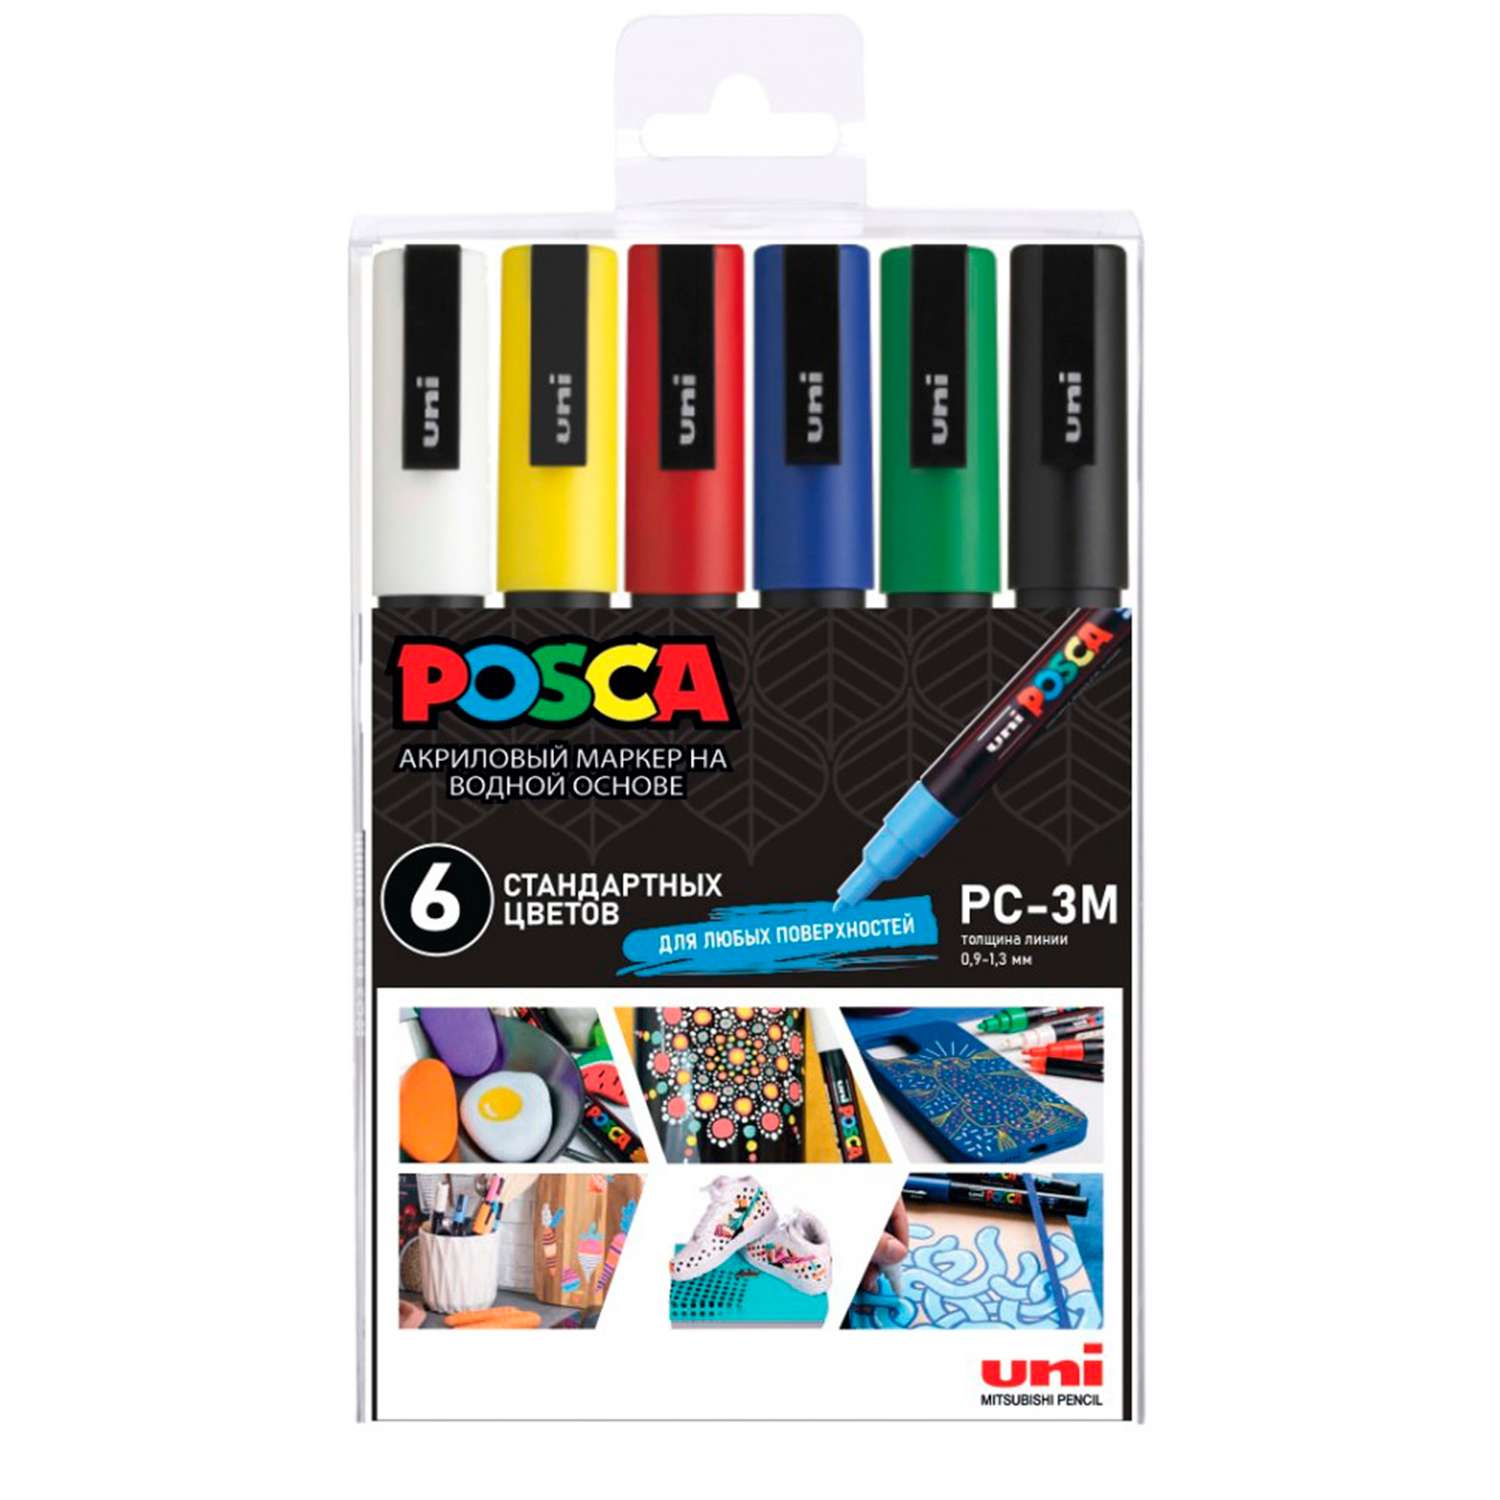 Набор акриловых маркеров UNI Posca PC-3M наконечник овал 0.9 - 1.3 мм. 6 цветов - фото 5